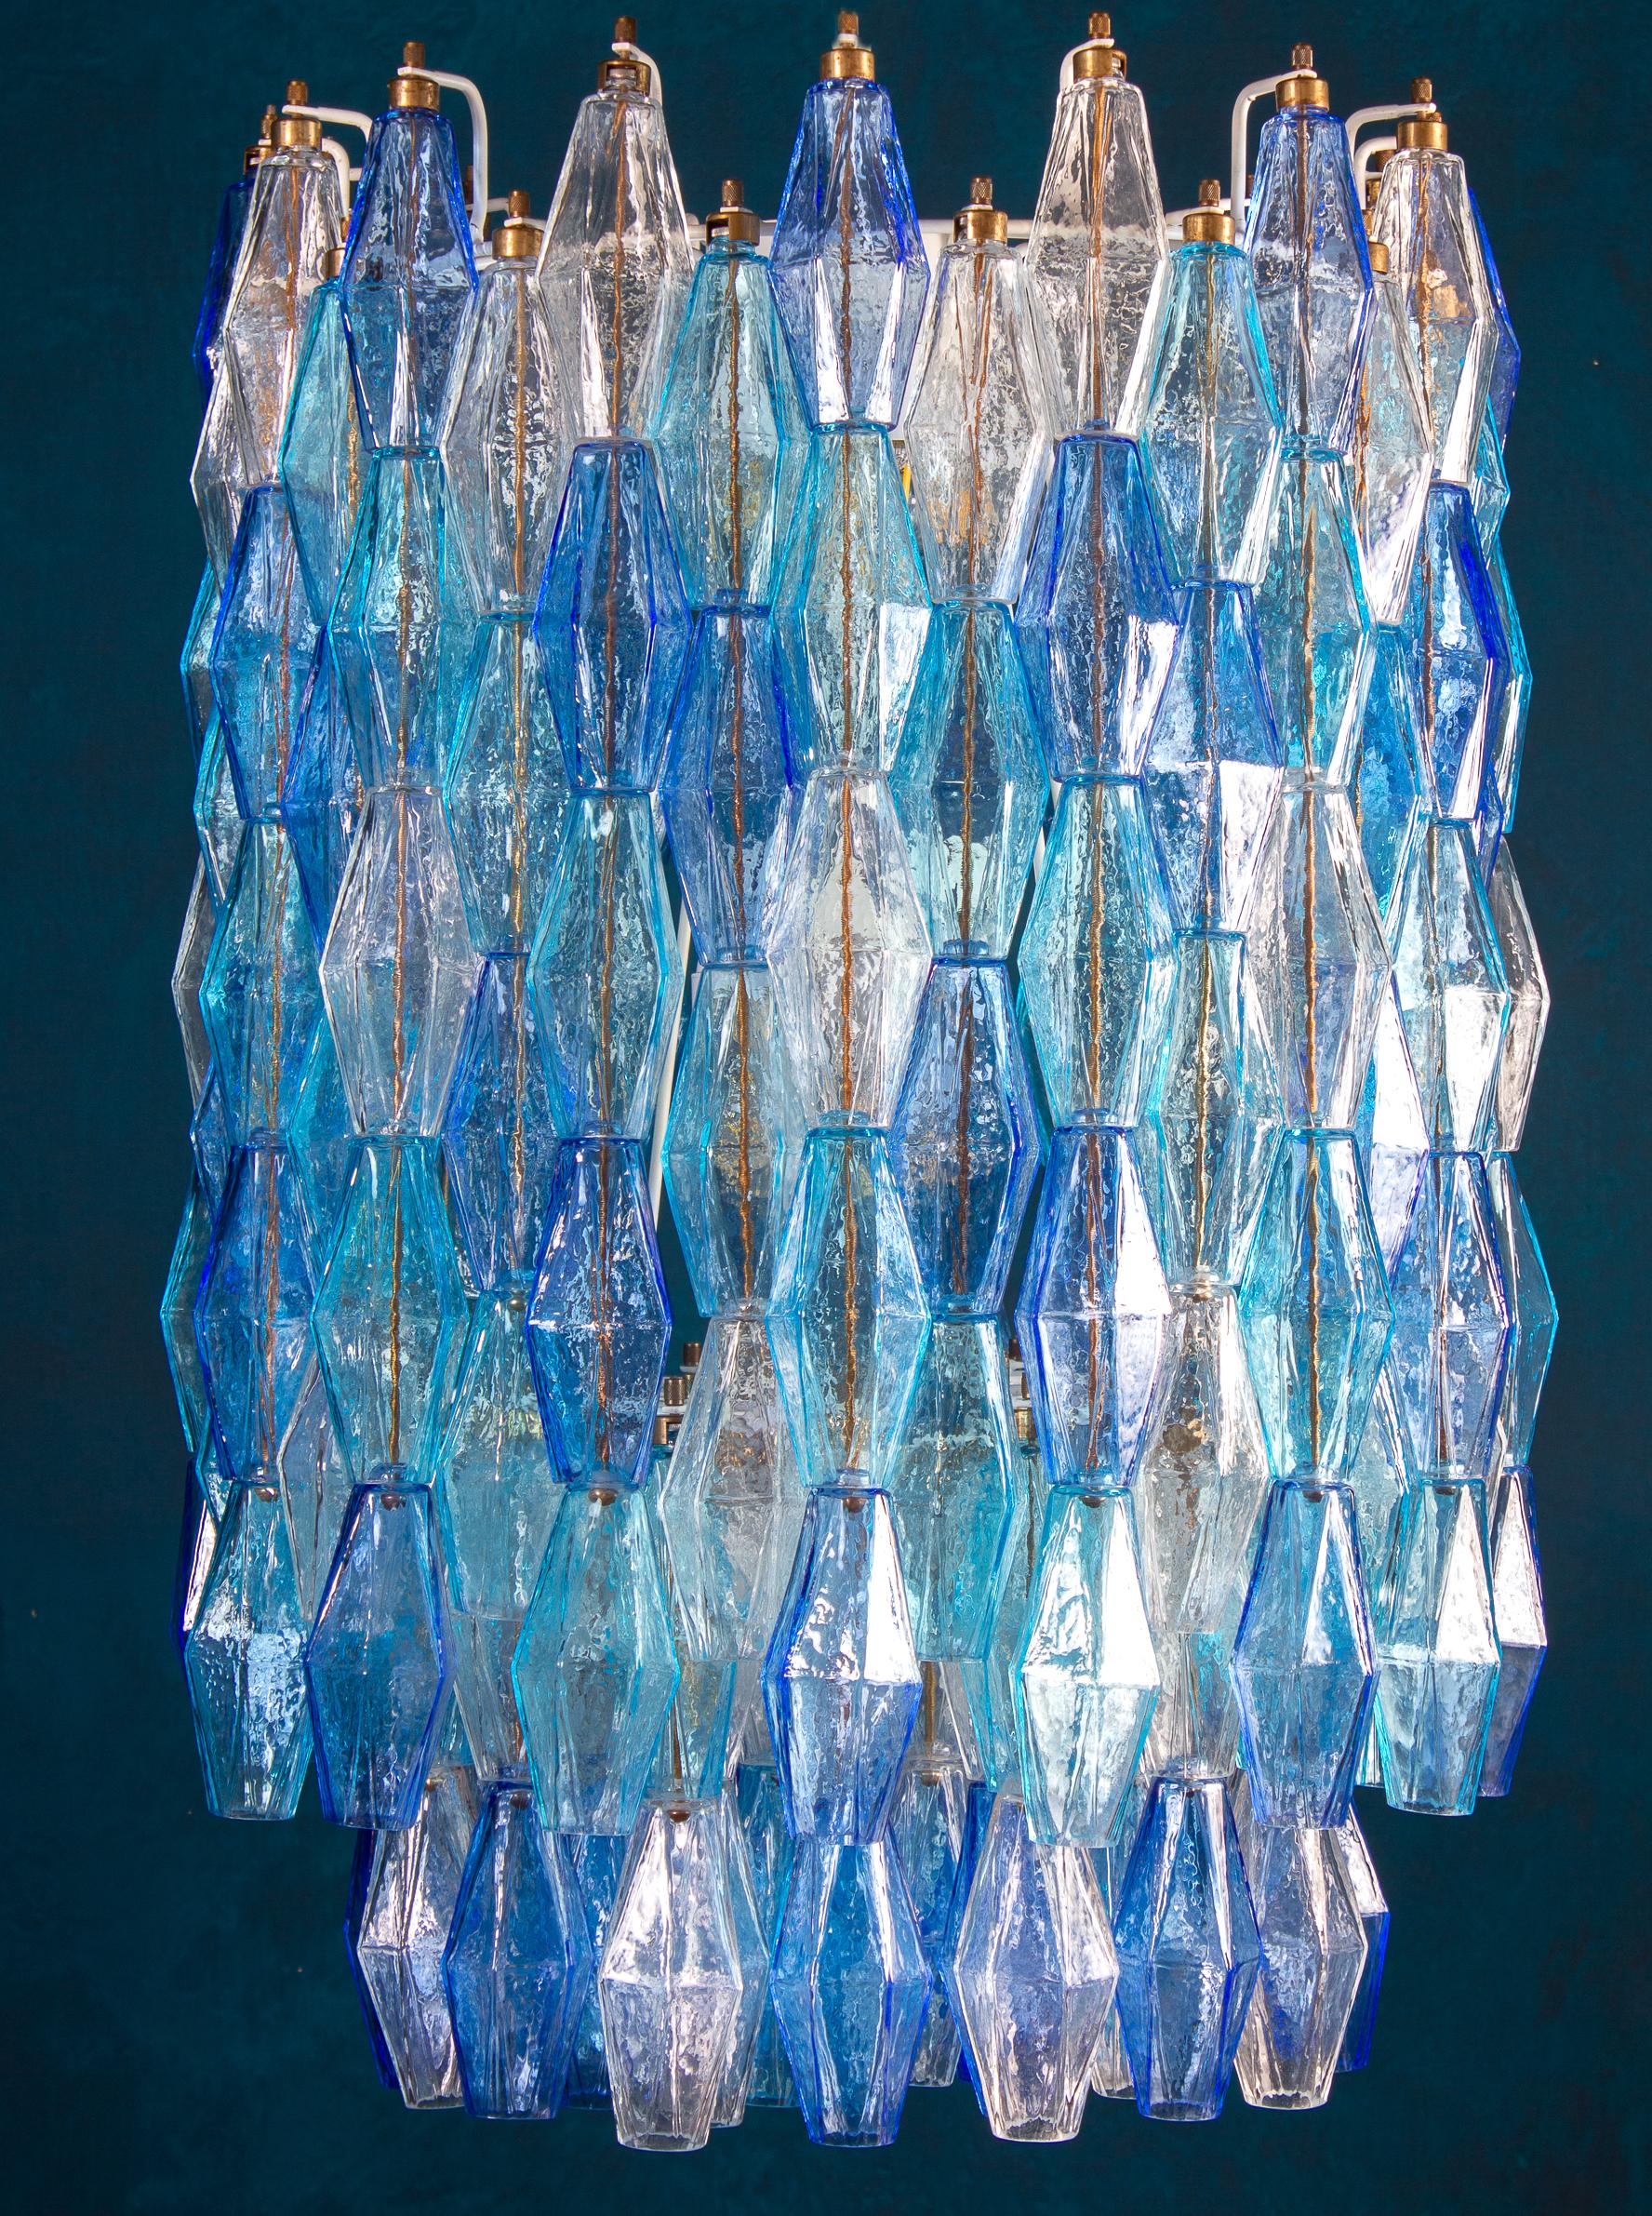 Dieser fantastische Kronleuchter besteht aus ca. 200 farbigem Poliedri-Glas aus Murano.
Sapphire Farbvariante mit himmlischen und Aquamarin kostbare Poliedri.
Maße: Höhe ohne Kette und Baldachin 88 cm (35inches). Mit Kette und Baldachin cm 130 (51